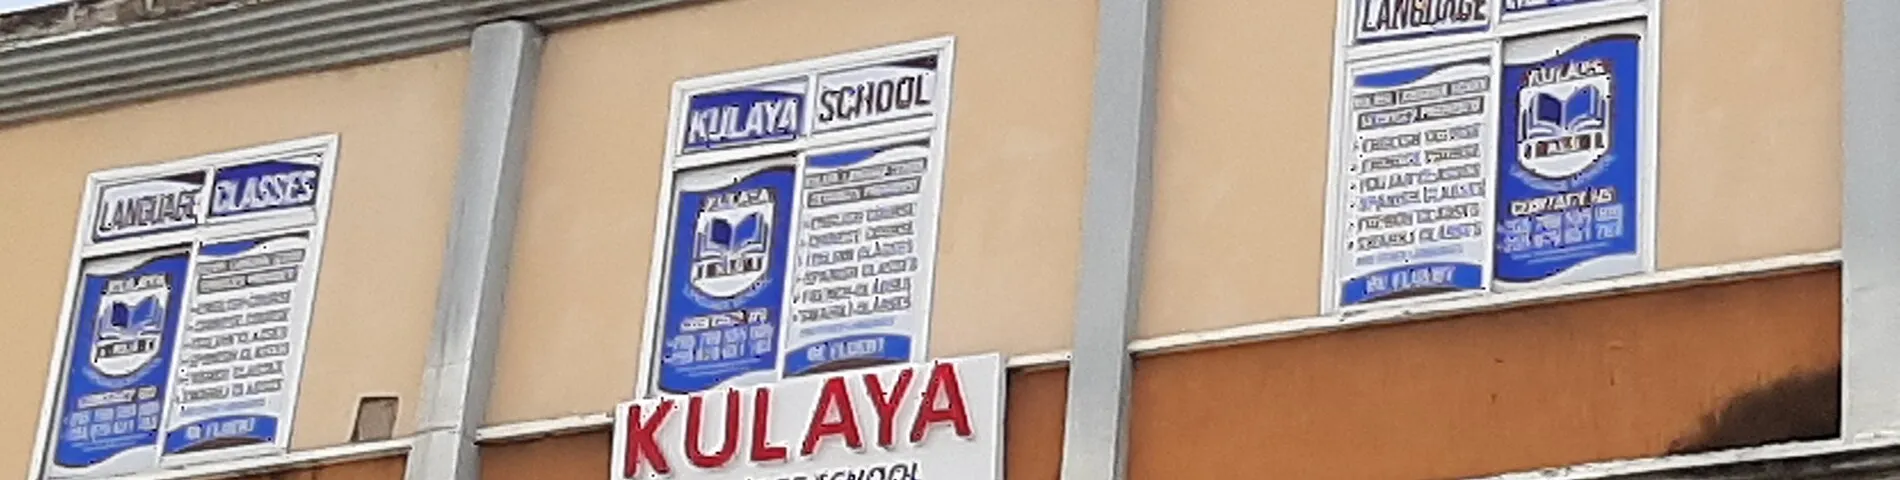 Kulaya Language School bilde 1